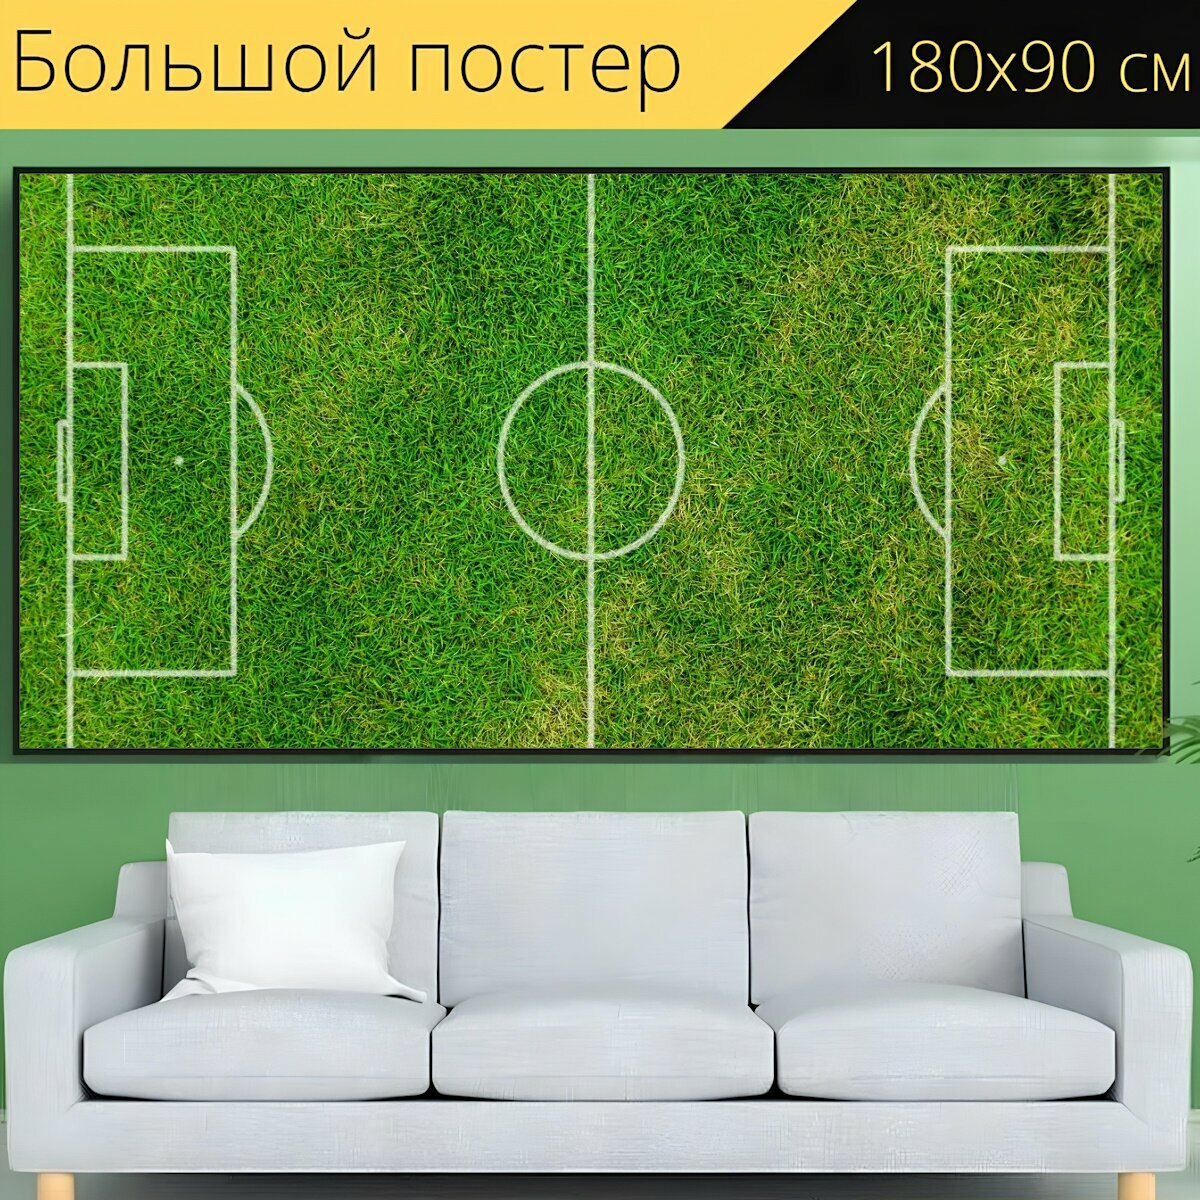 Большой постер "Футбольное поле, футбольный, лужайка" 180 x 90 см. для интерьера